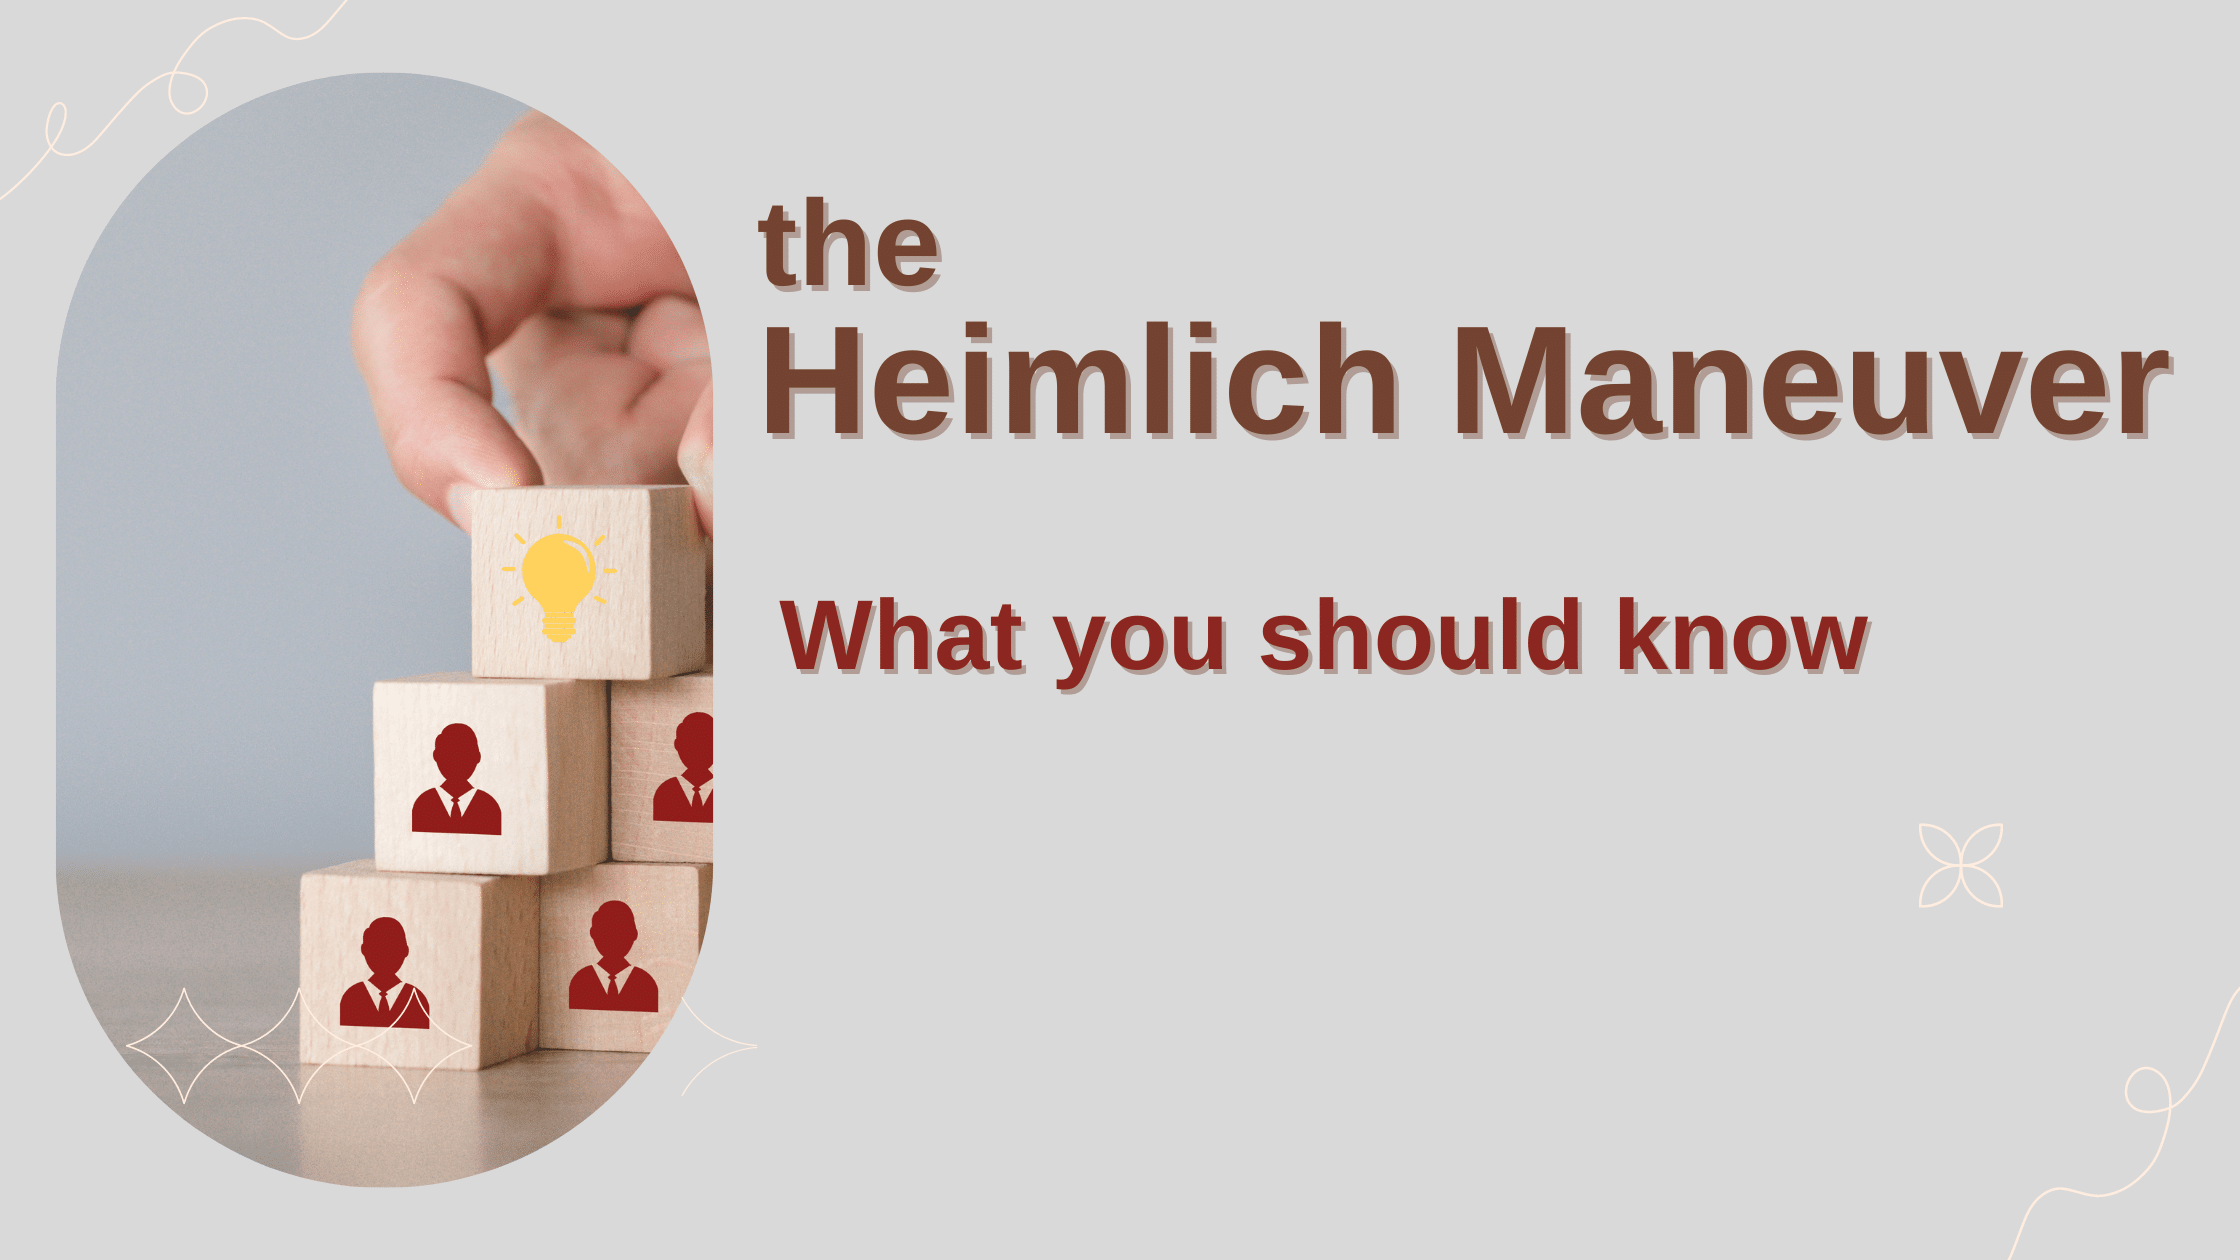 the Heimlich Maneuver